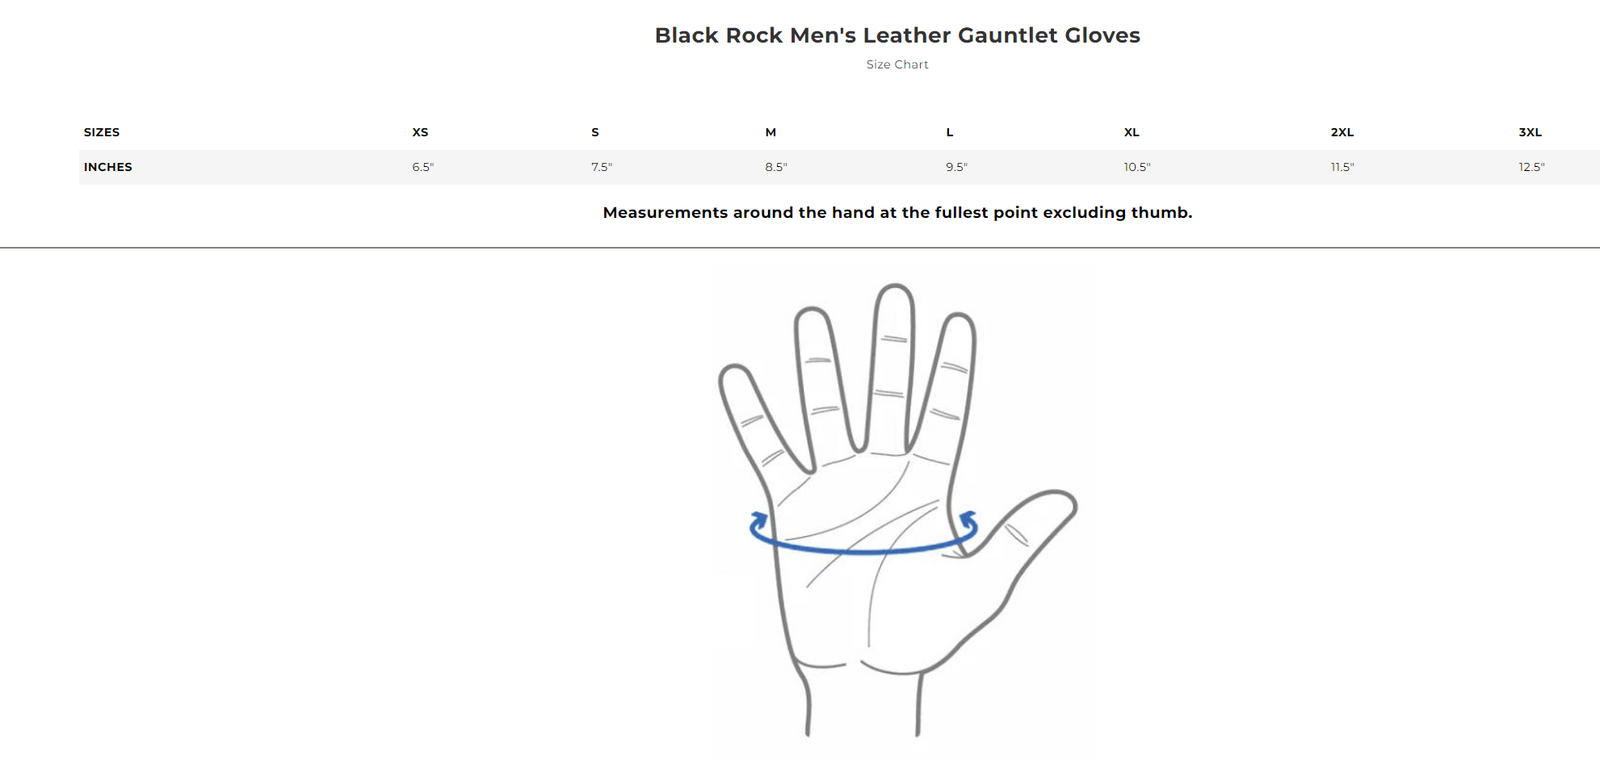 Size chart for Black Rock men's leather gauntlet gloves.